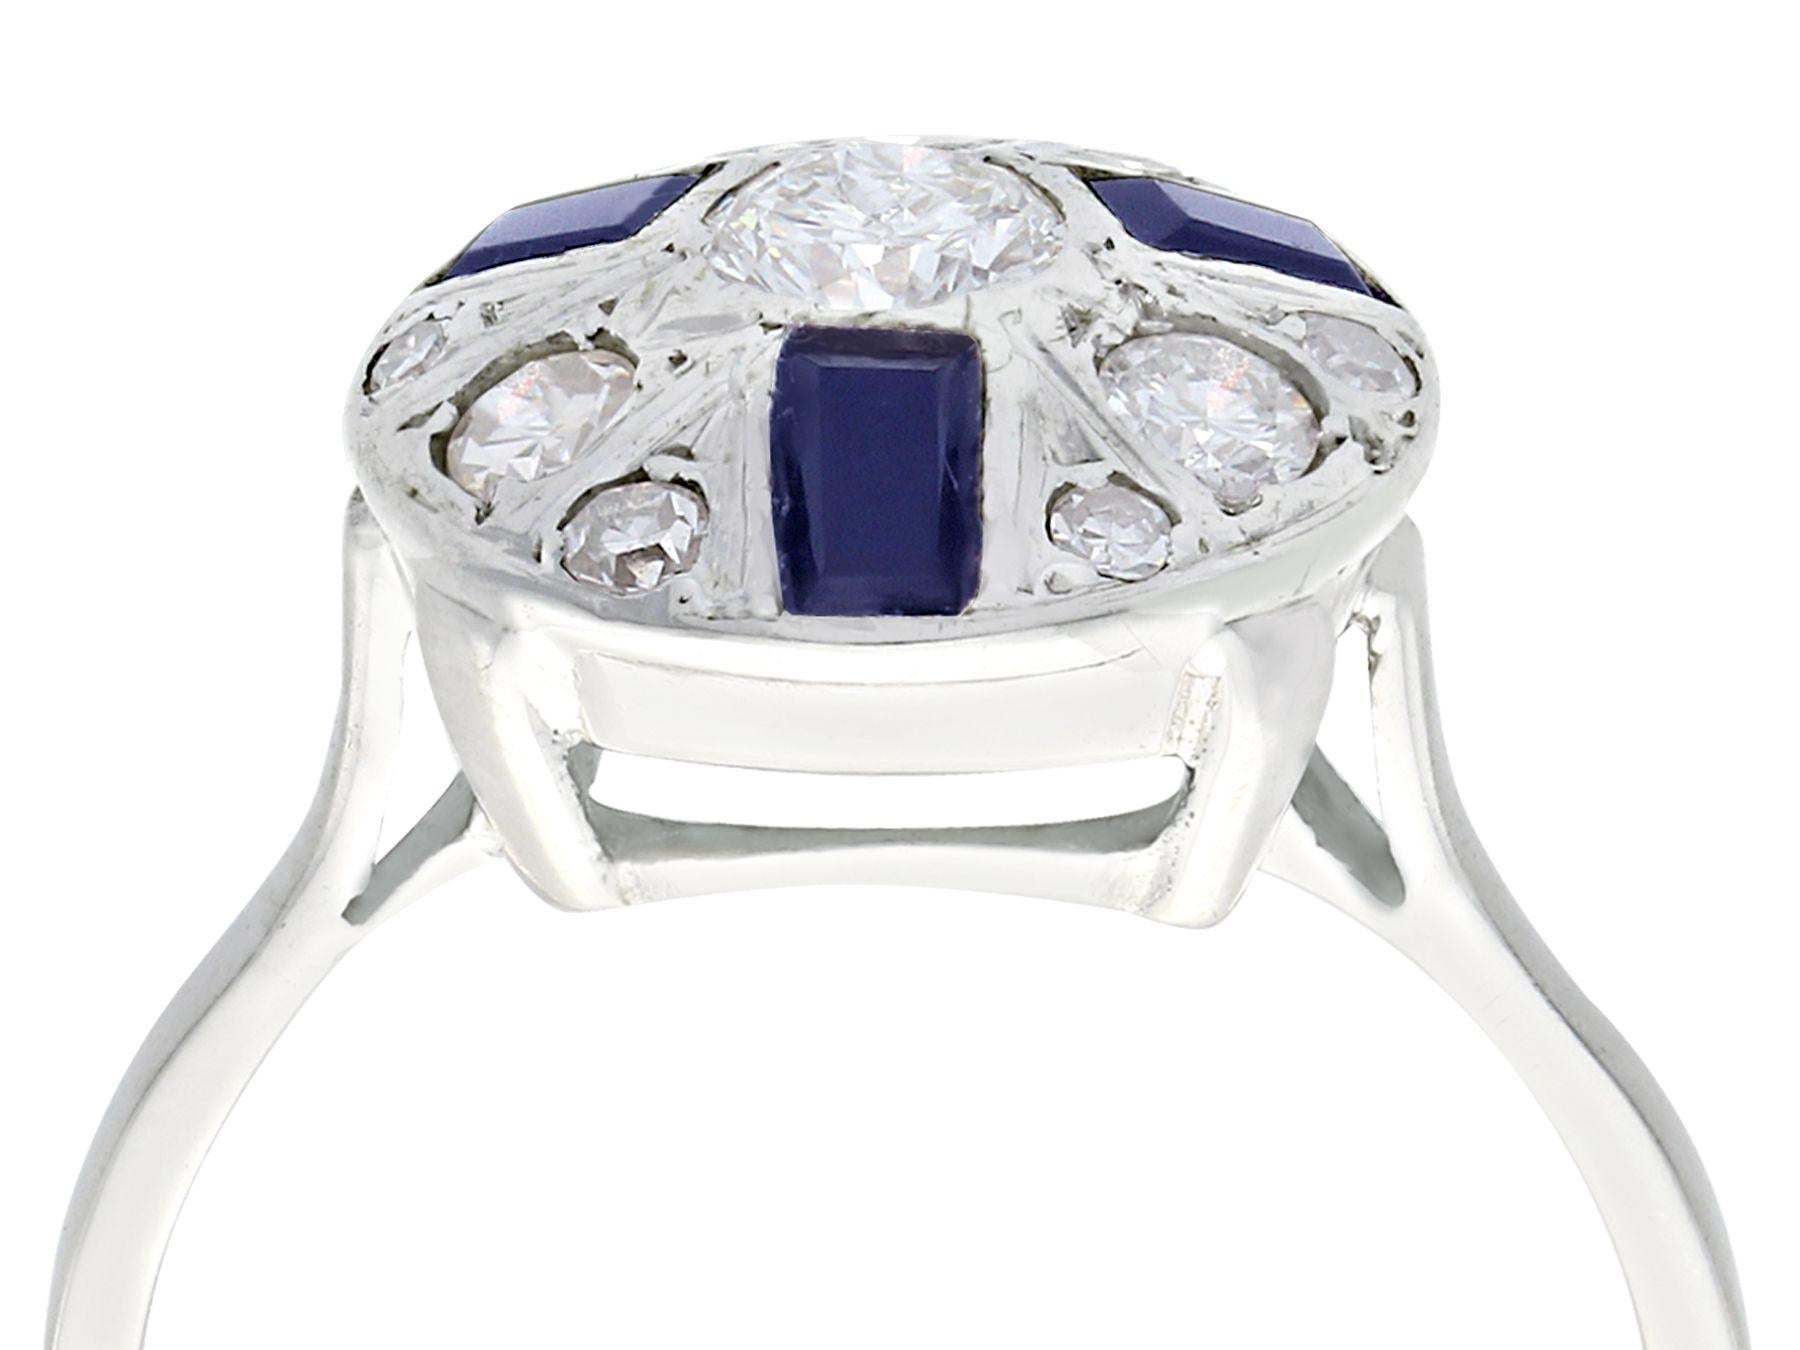 Eine feine und beeindruckende Vintage 0,55 Karat Diamanten und 0,32 Karat natürlichen blauen Saphir, 18 Karat Weißgold Art Deco-Stil Kleid Ring; Teil unserer antiken Schmuck und Estate Jewelry Collections.

Dieser feine und beeindruckende Saphir-